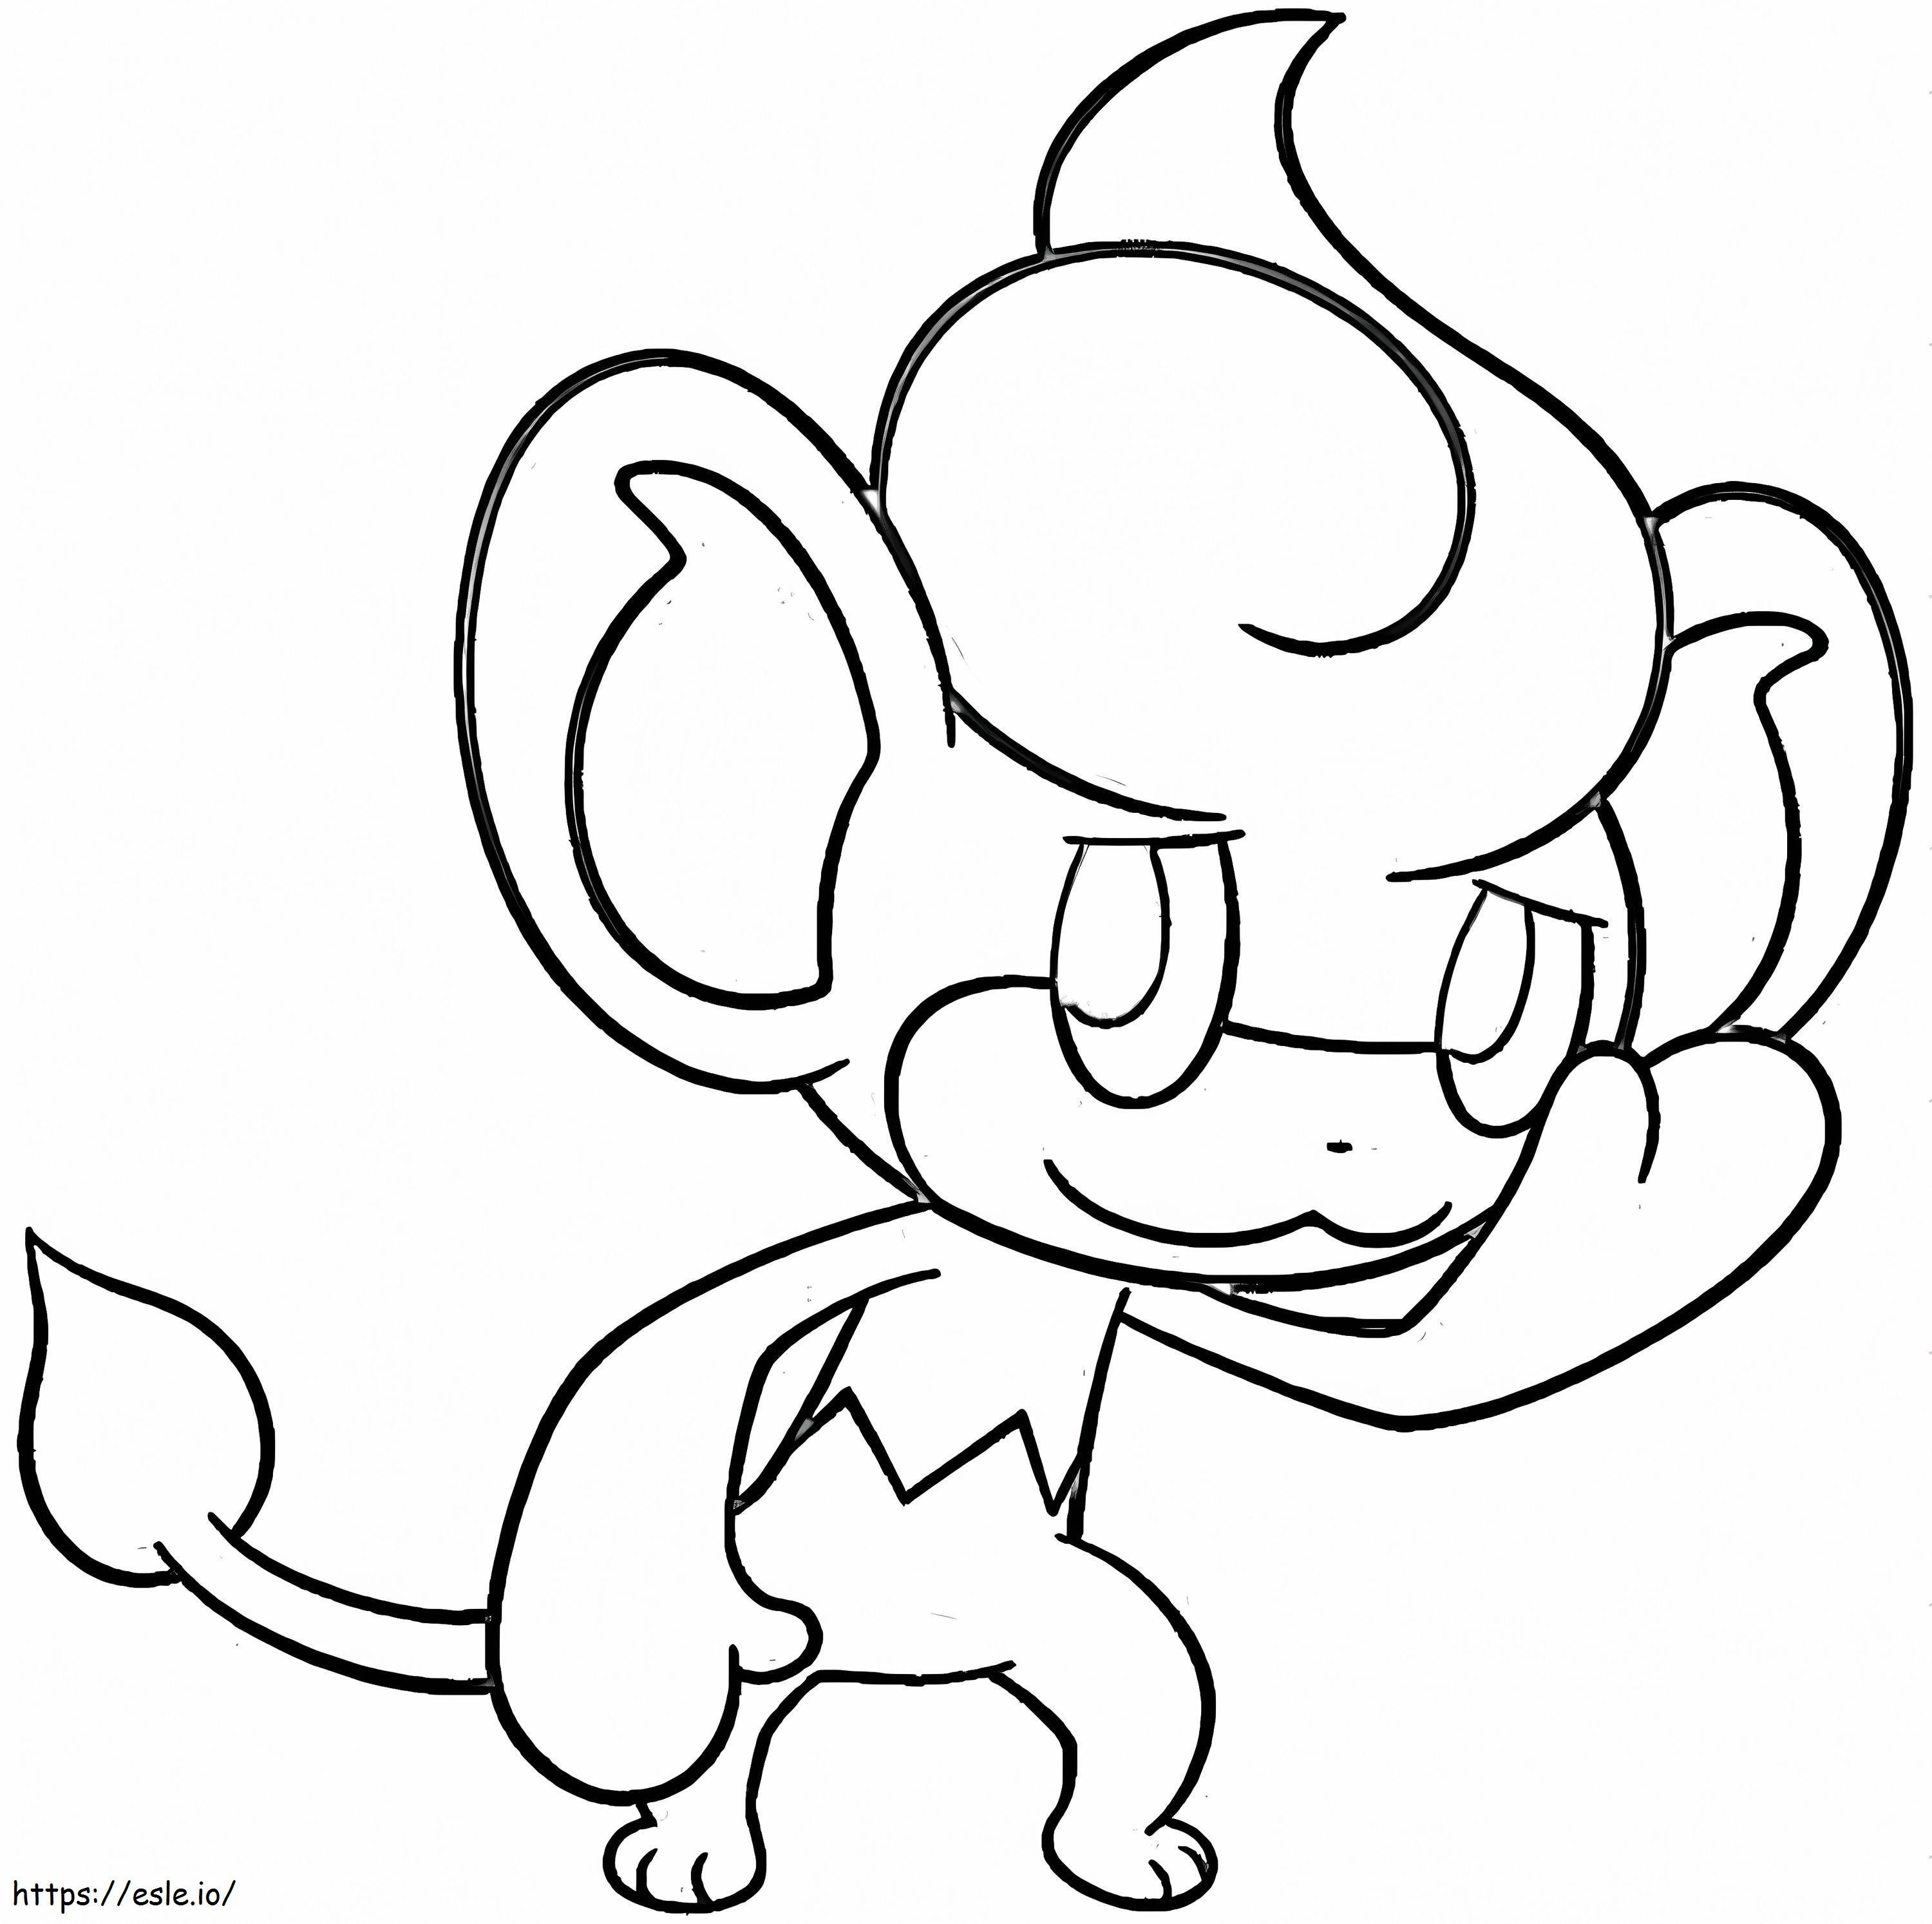 Coloriage Pansear Pokémon 2 à imprimer dessin